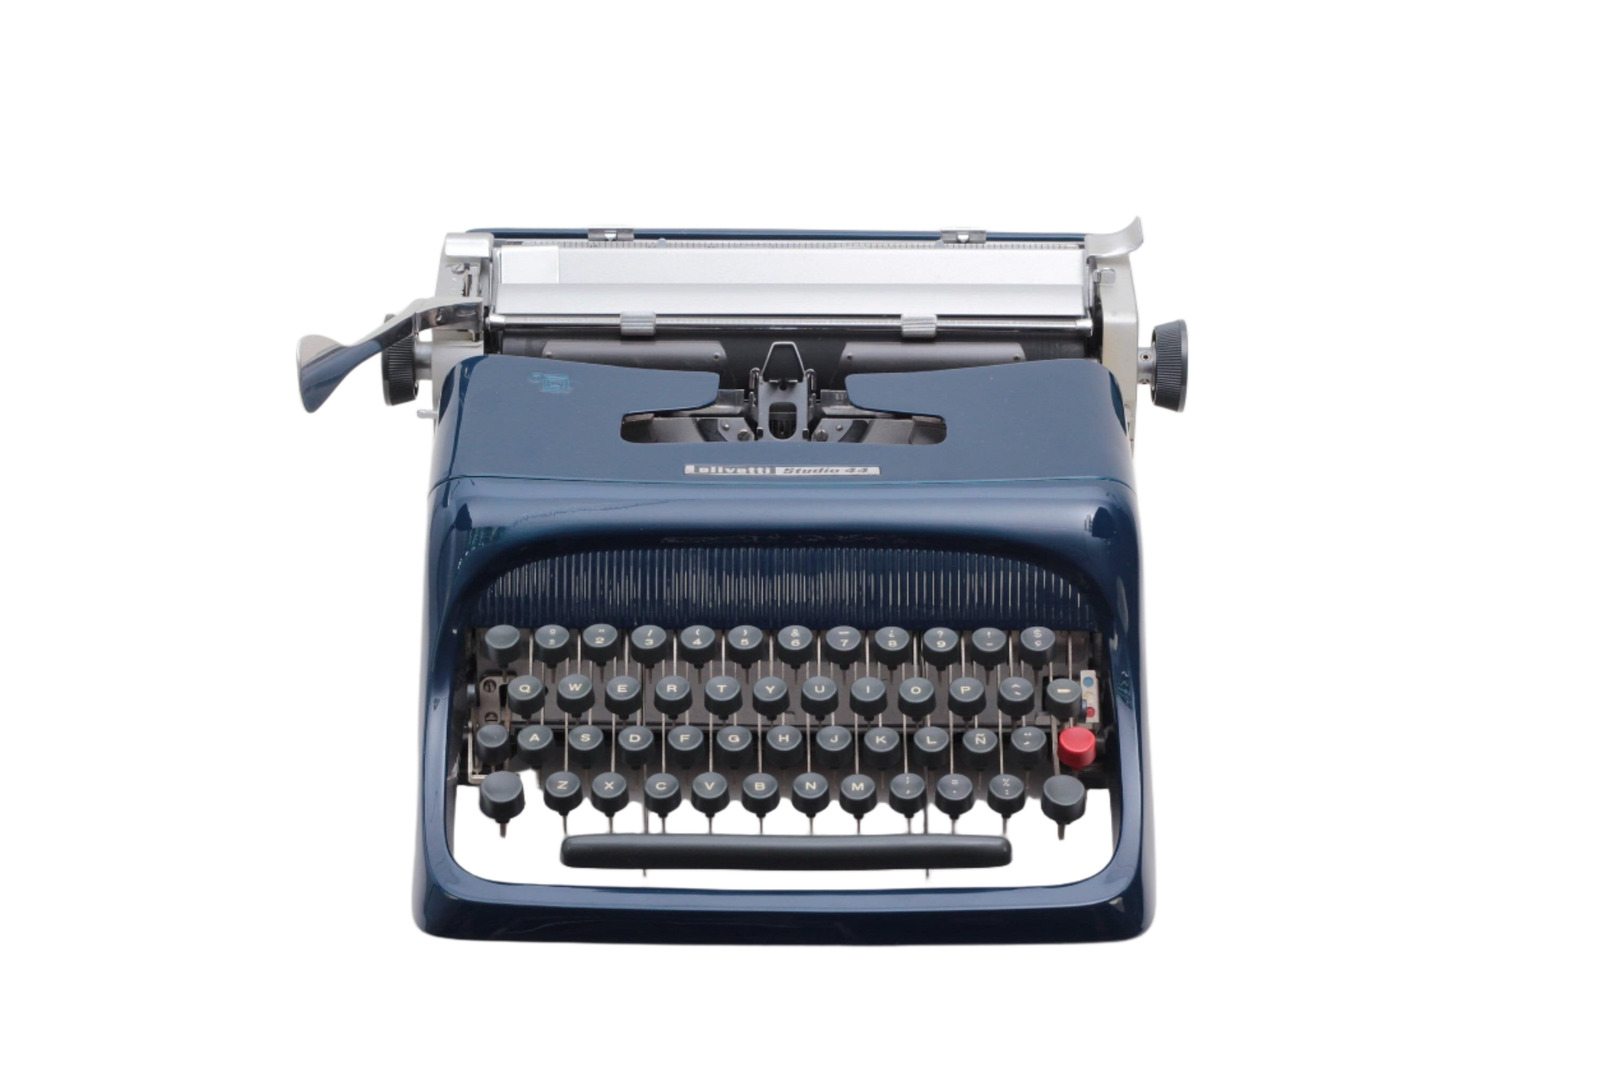 Olivetti Studio 44 Navy Blue Vintage Typewriter, Serviced